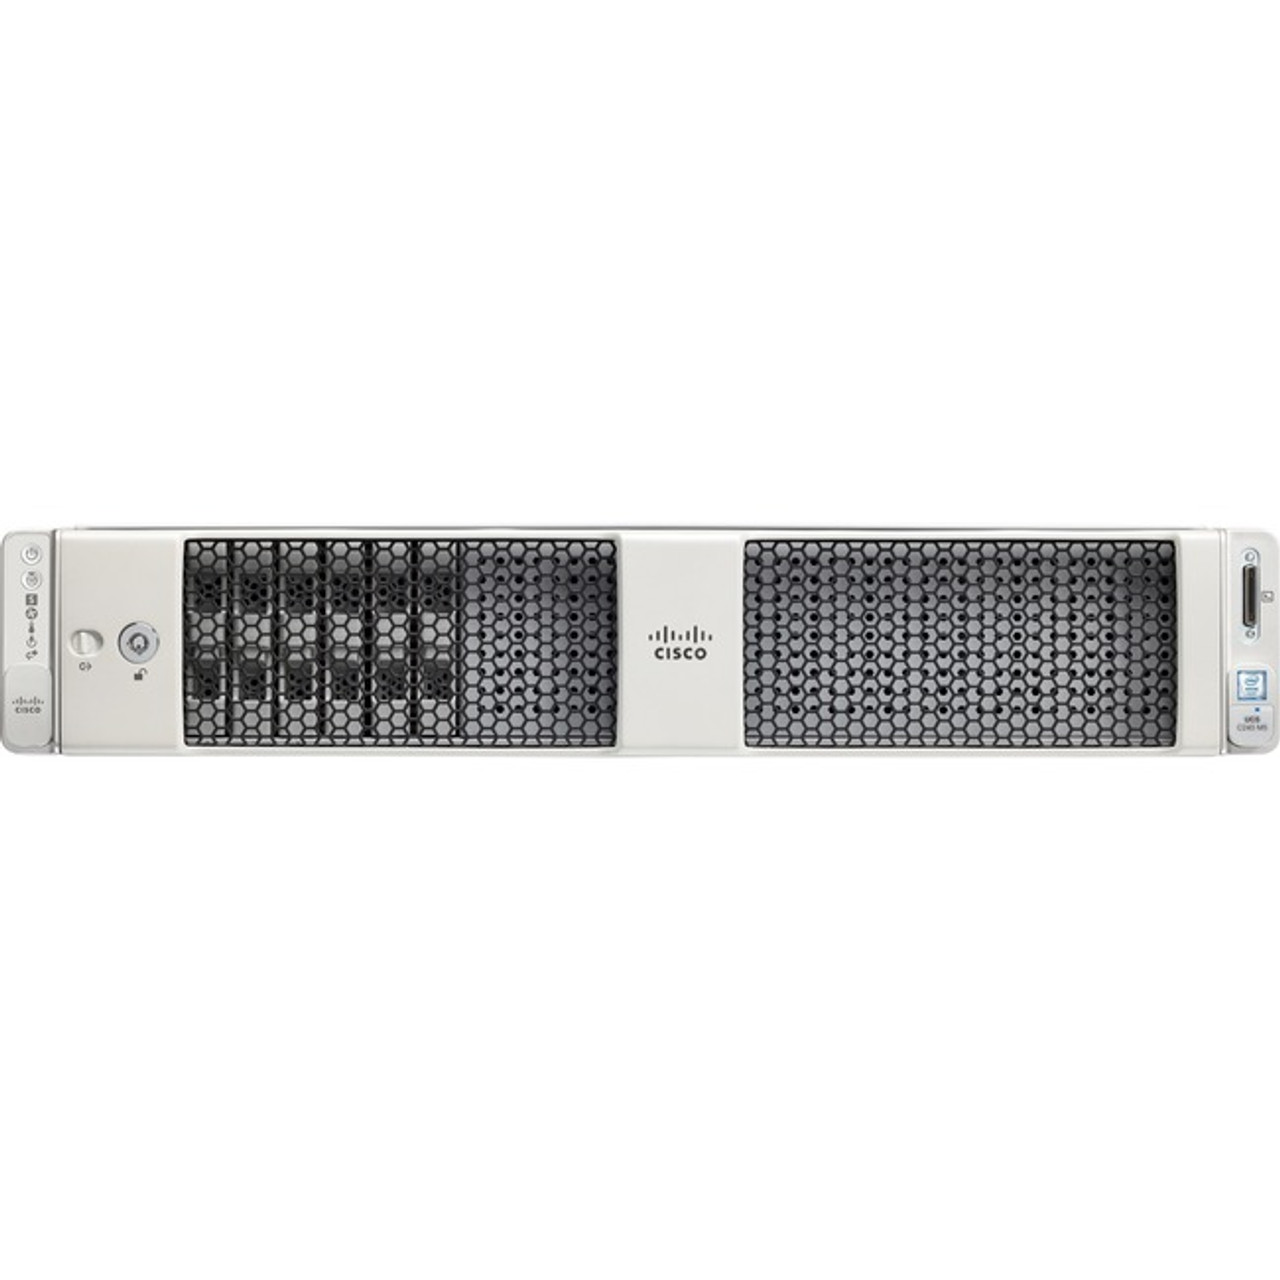 Cisco UCS-SP-C240M5-S4